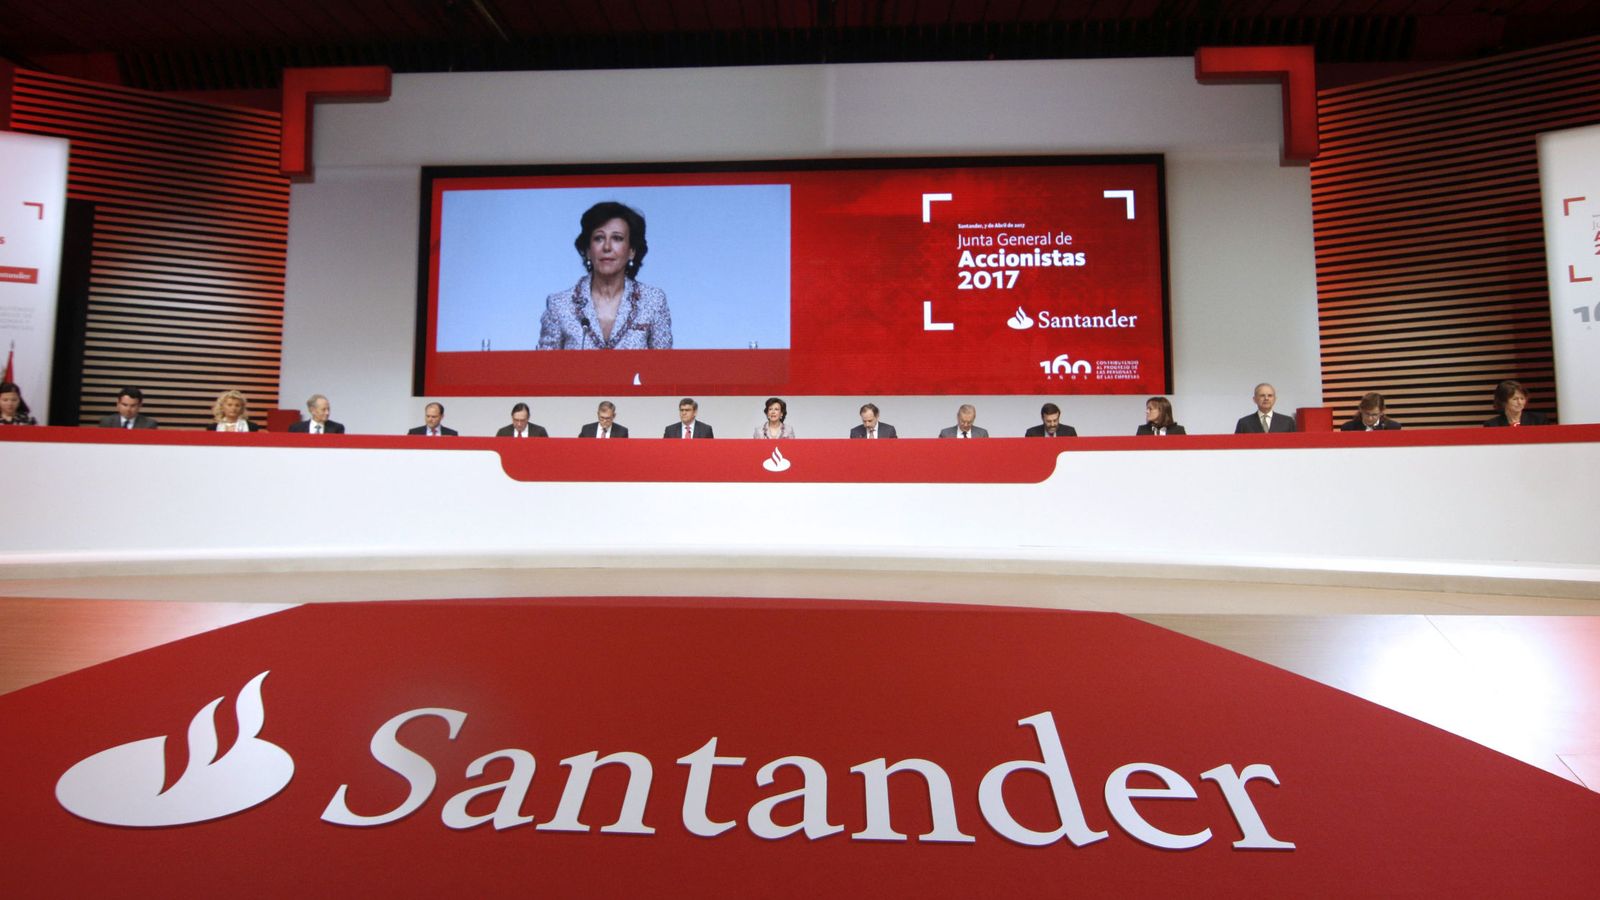 Foto: Imagen de la última junta general de accionistas del Santander.